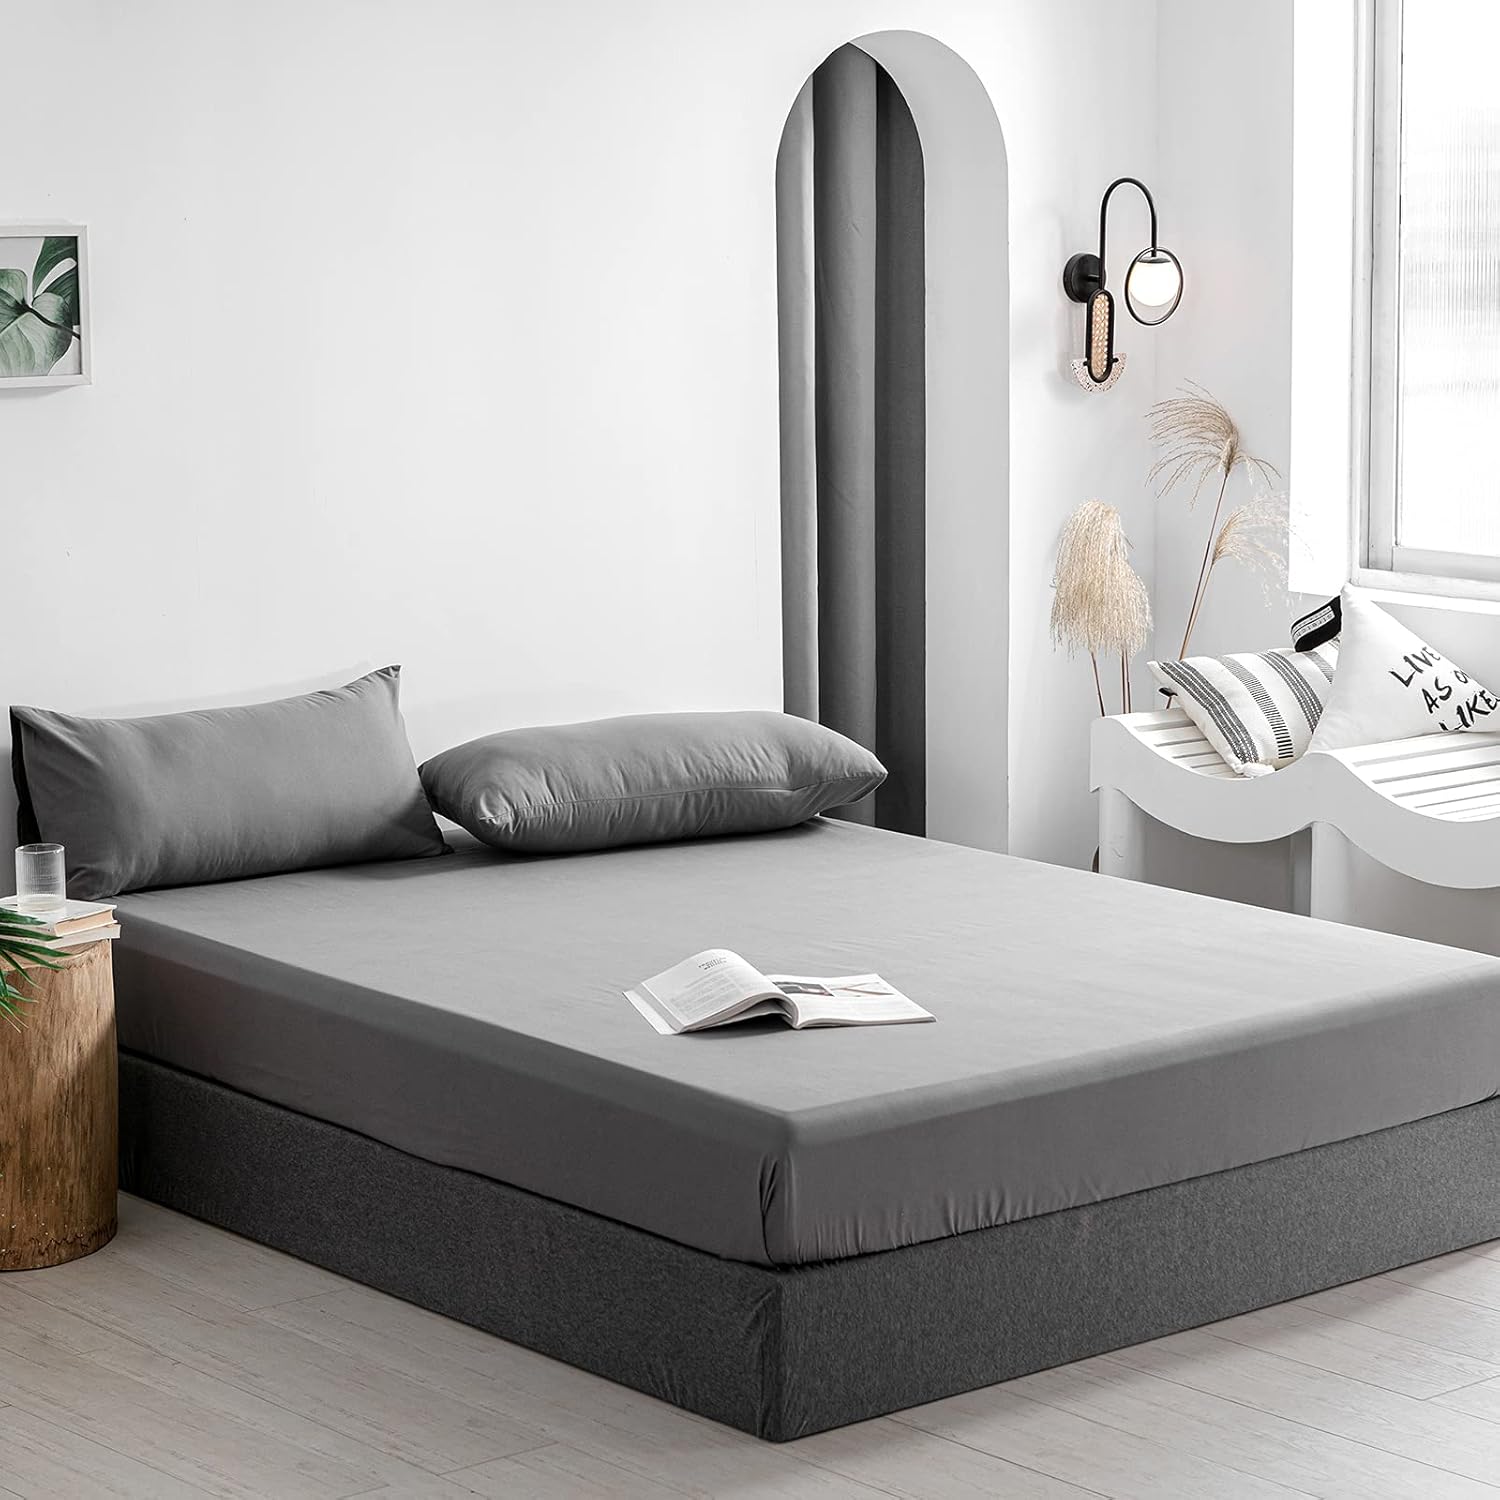 Bedding Drap Housse - Gris, 160 x 200 cm - Coupes de28 cm pour